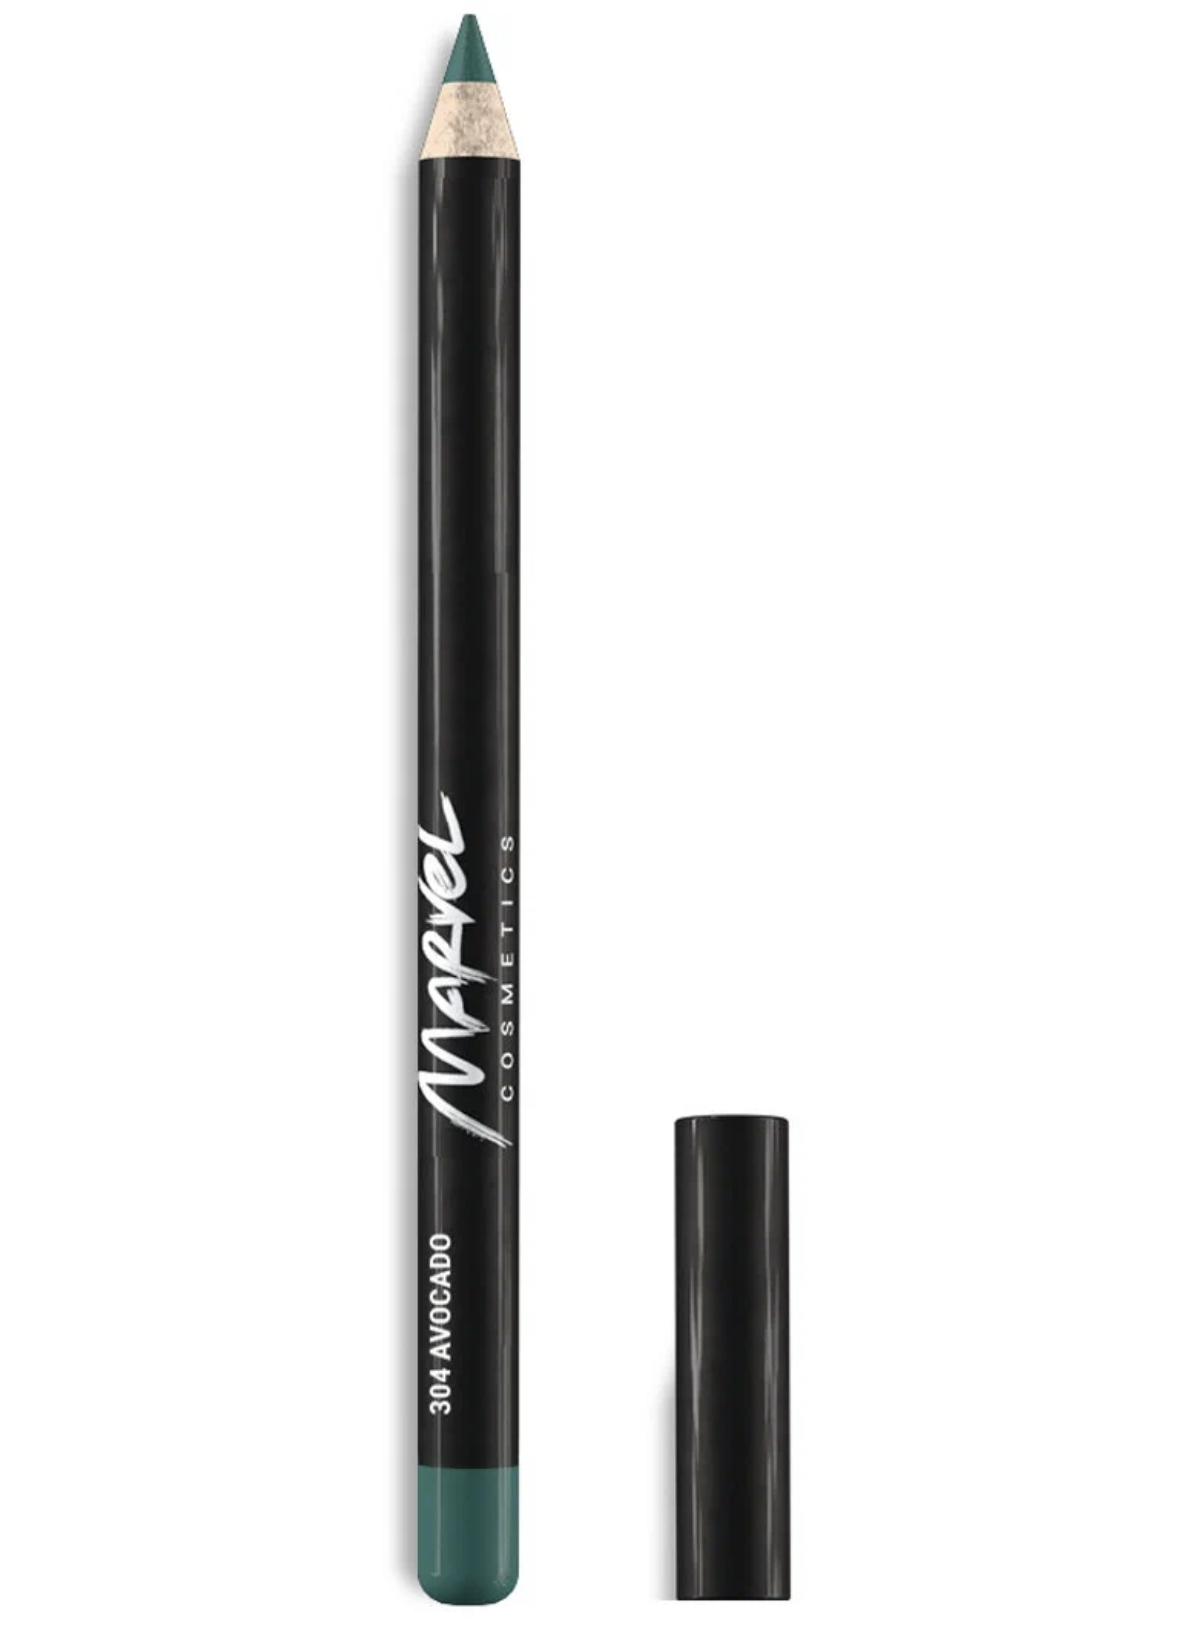    / Marvel Cosmetics -    Lip Liner Pencil  304 Avocado